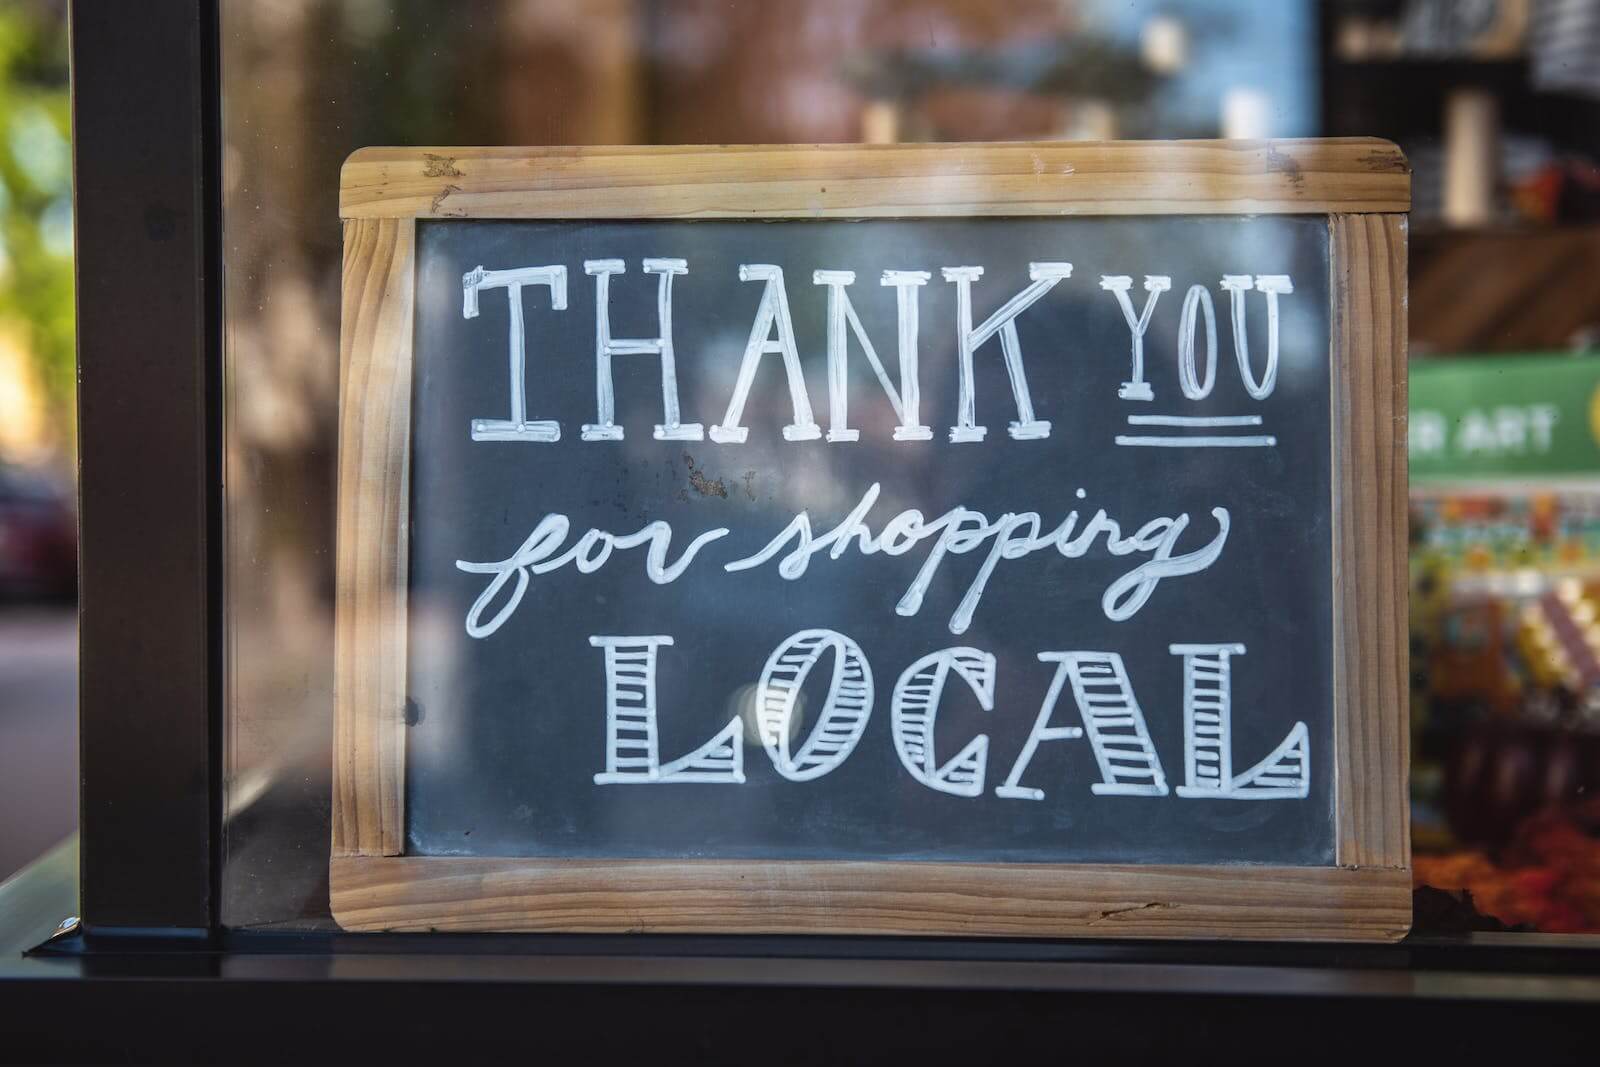 Ladenschild mit der Aufschrift 'Thank you for shopping local', symbolisiert die Wertschätzung für den lokalen Handel.